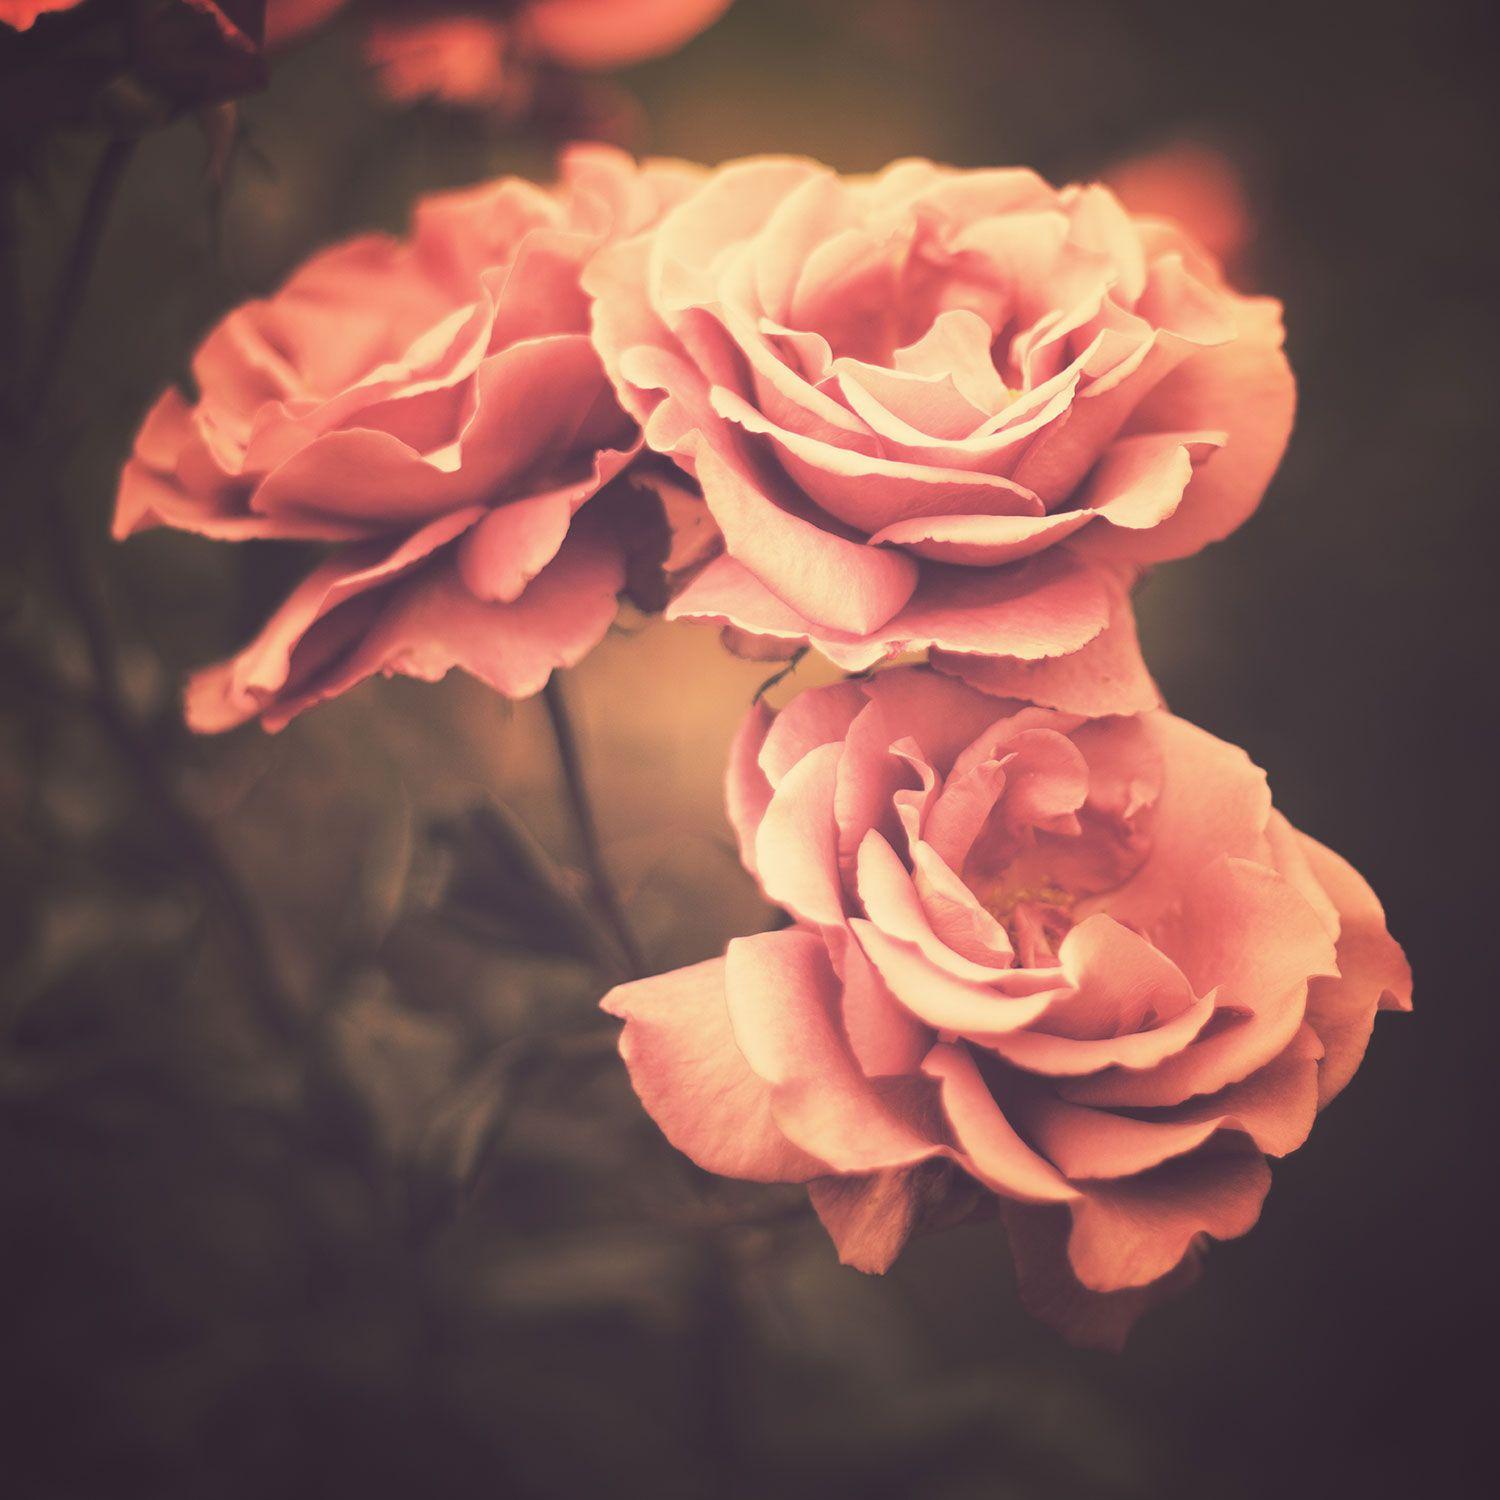 Hình nền hoa hồng cổ điển là lựa chọn hoàn hảo cho những tín đồ yêu hoa. Nó tuyệt đẹp, tinh tế và tạo cho không gian máy tính của bạn không khí lãng mạn và nữ tính. Truy cập ngay để thưởng thức những tác phẩm hình ảnh đẹp nhất!